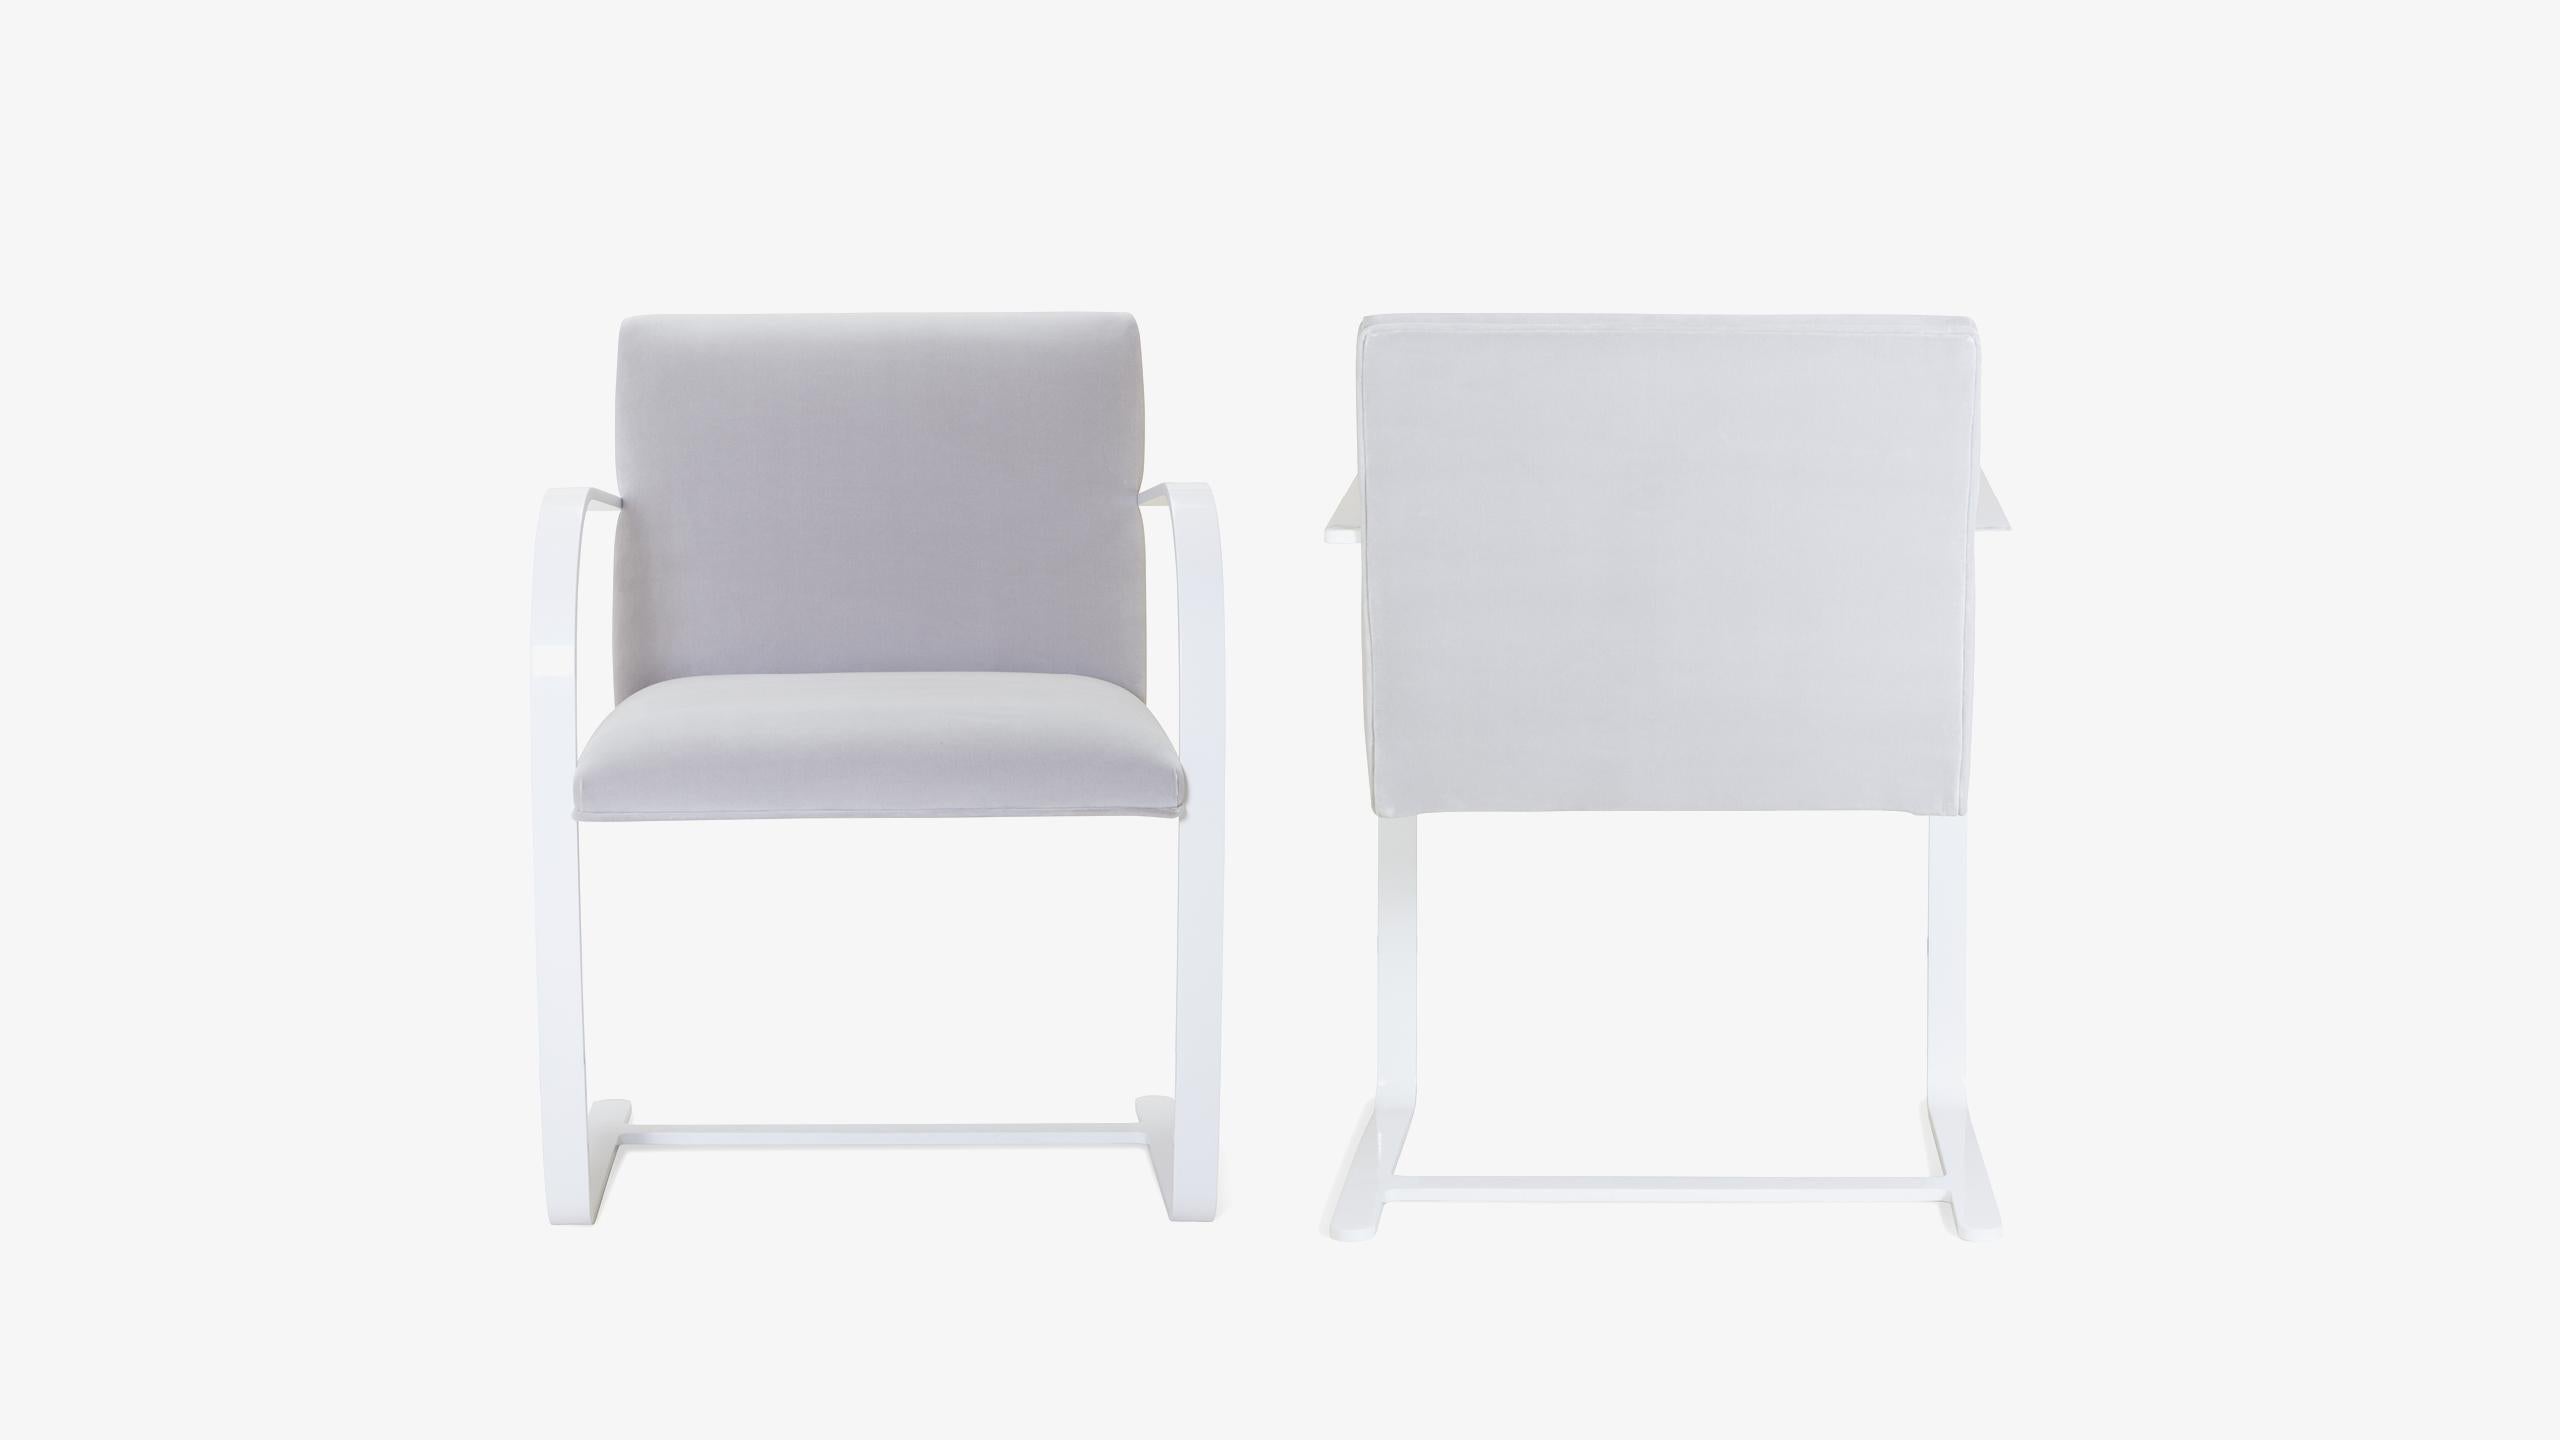 La définition du minimalisme dans un design singulier, réalisé par le grand Ludwig Mies van der Rohe en 1929 ; la chaise à barre plate Brno est exactement cela. Nous avons édité ces itérations contemporaines d'authentiques originaux d'une manière